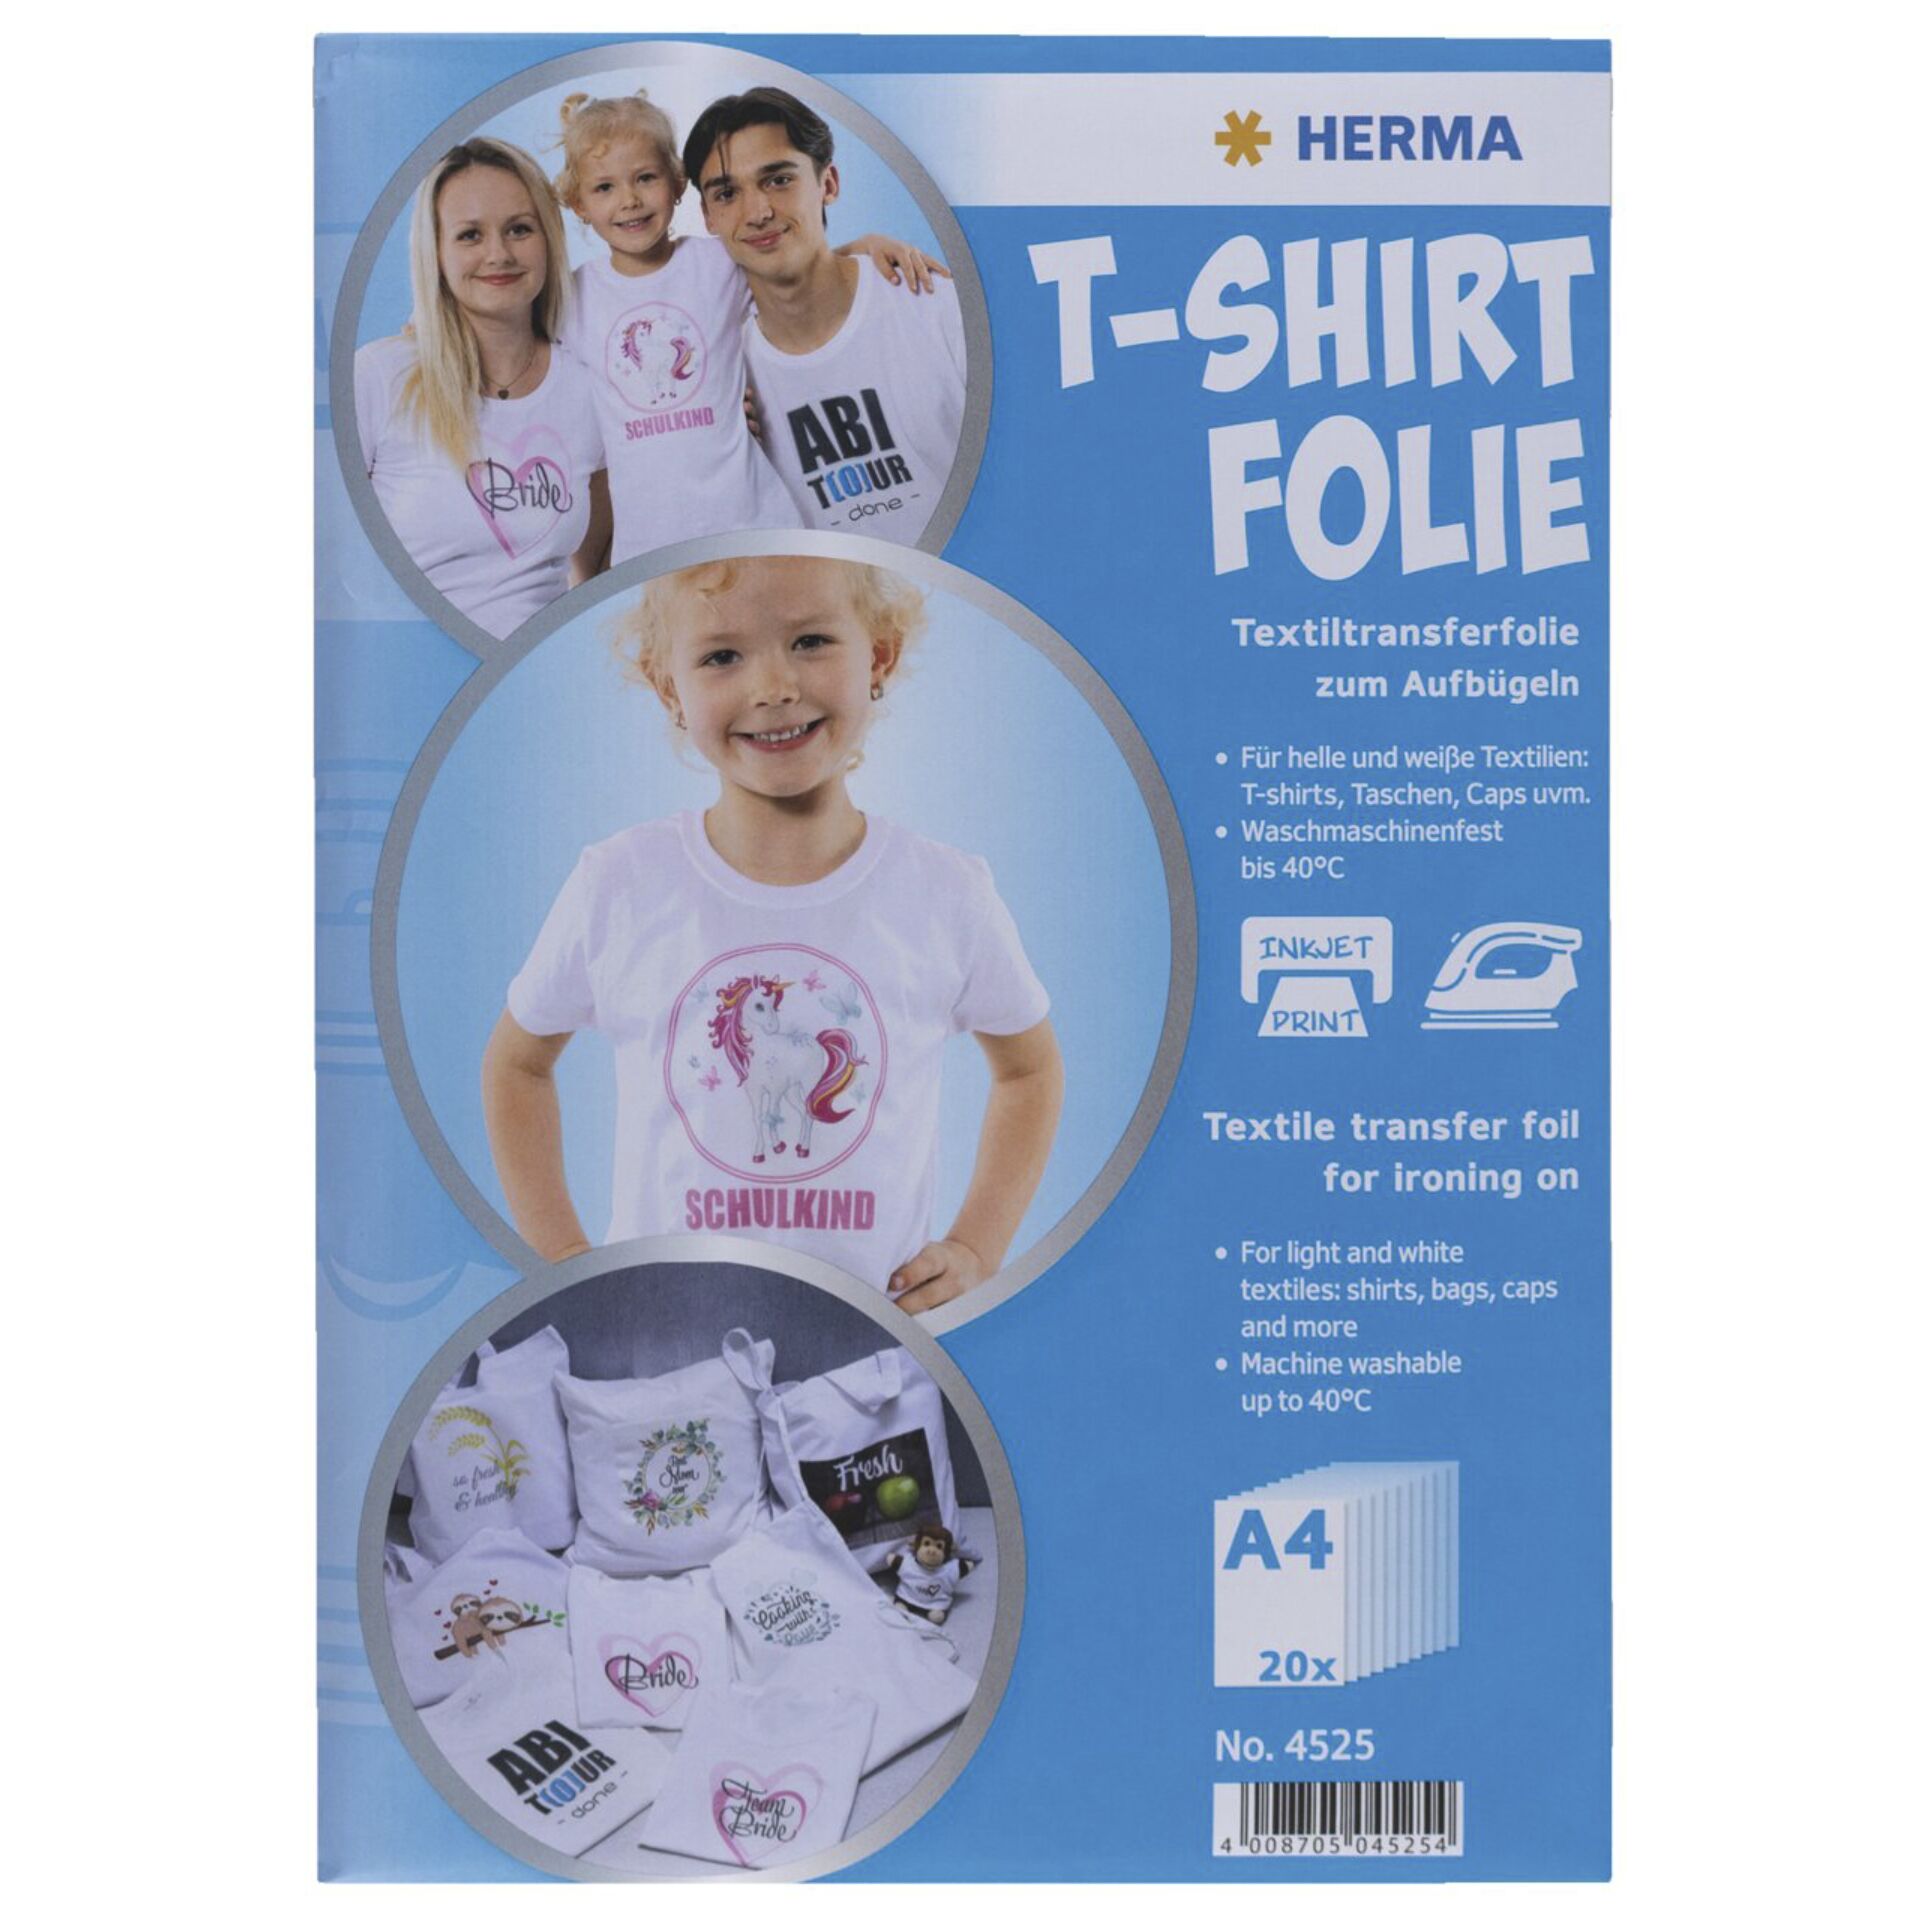 Herma T-Shirt Folie A4 für helle + weiße Textilien 20 Blatt  4525